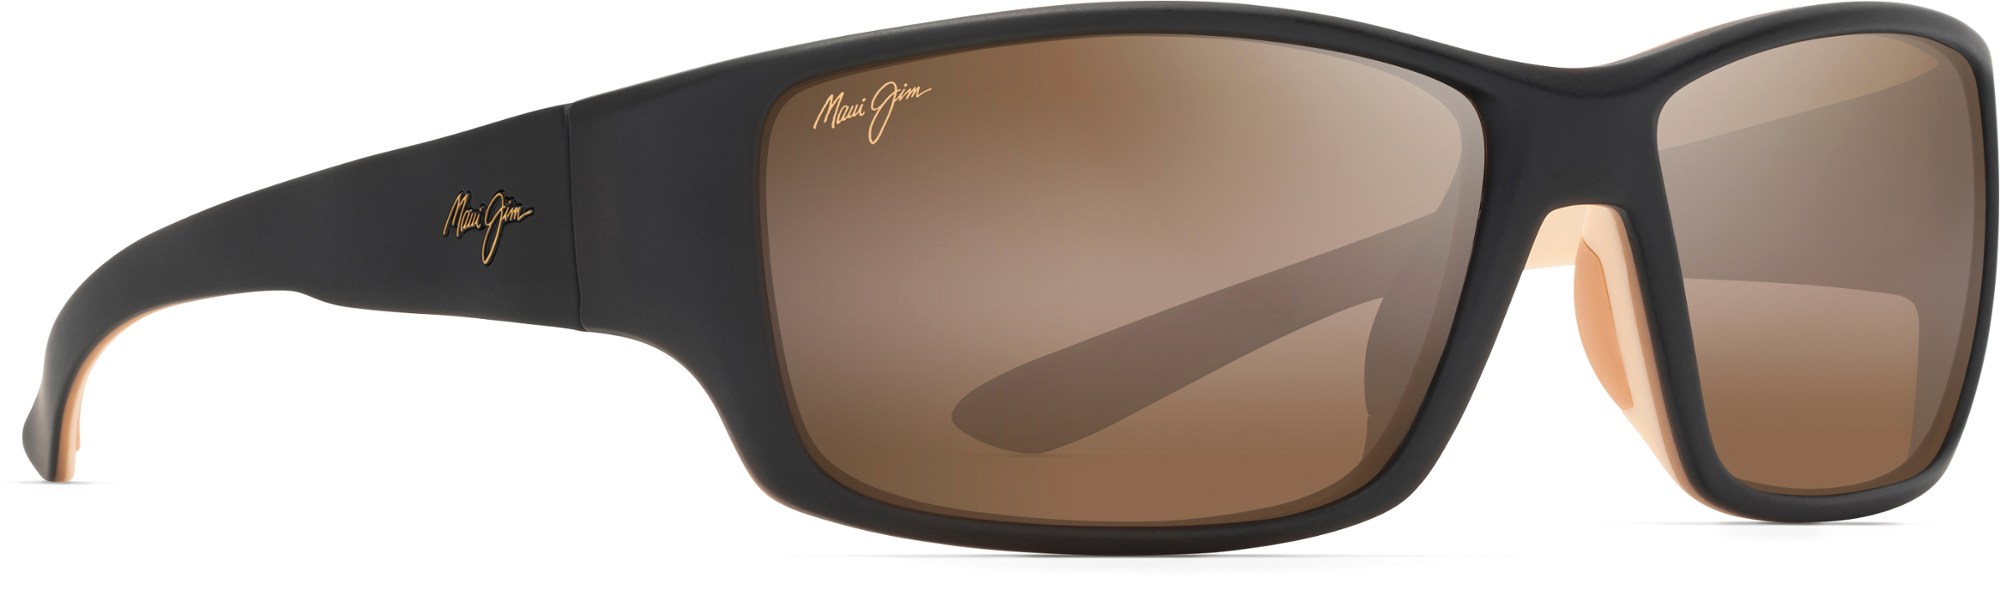 Поляризованные солнцезащитные очки Local Kine Maui Jim, коричневый